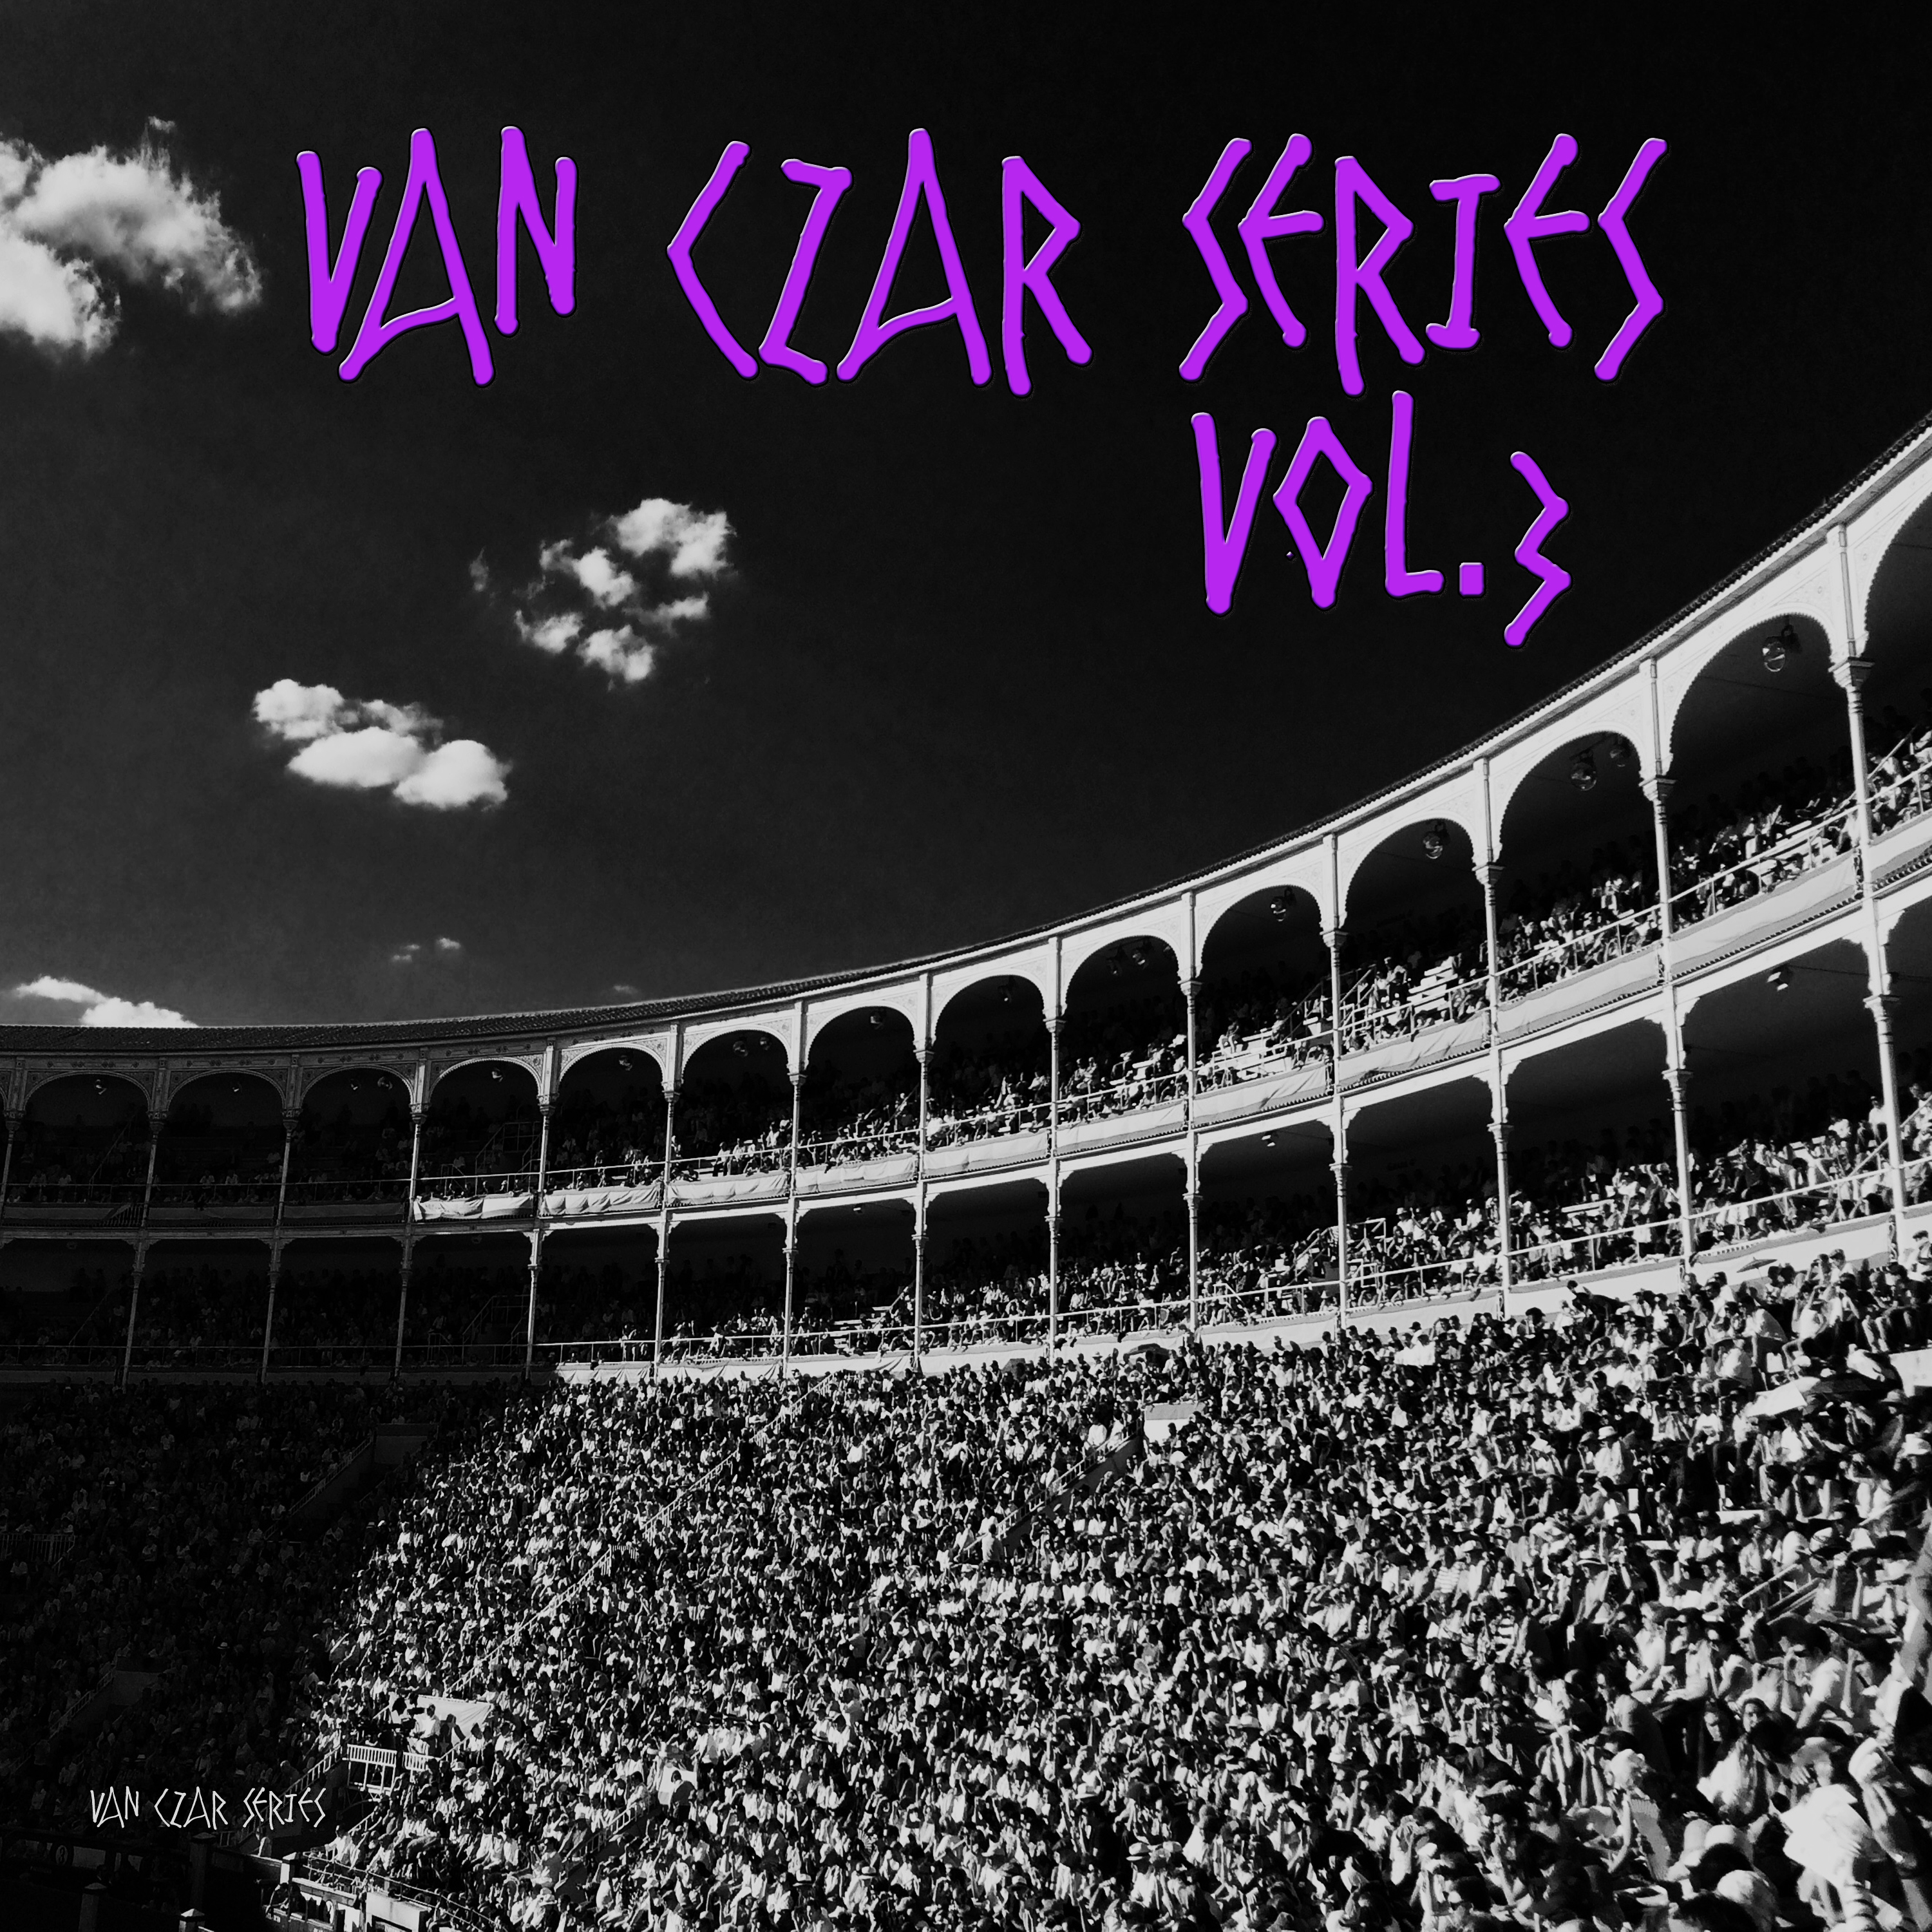 Van Czar Series, Vol. 3 (Mixed By Van Czar) [Continuous DJ Mix]